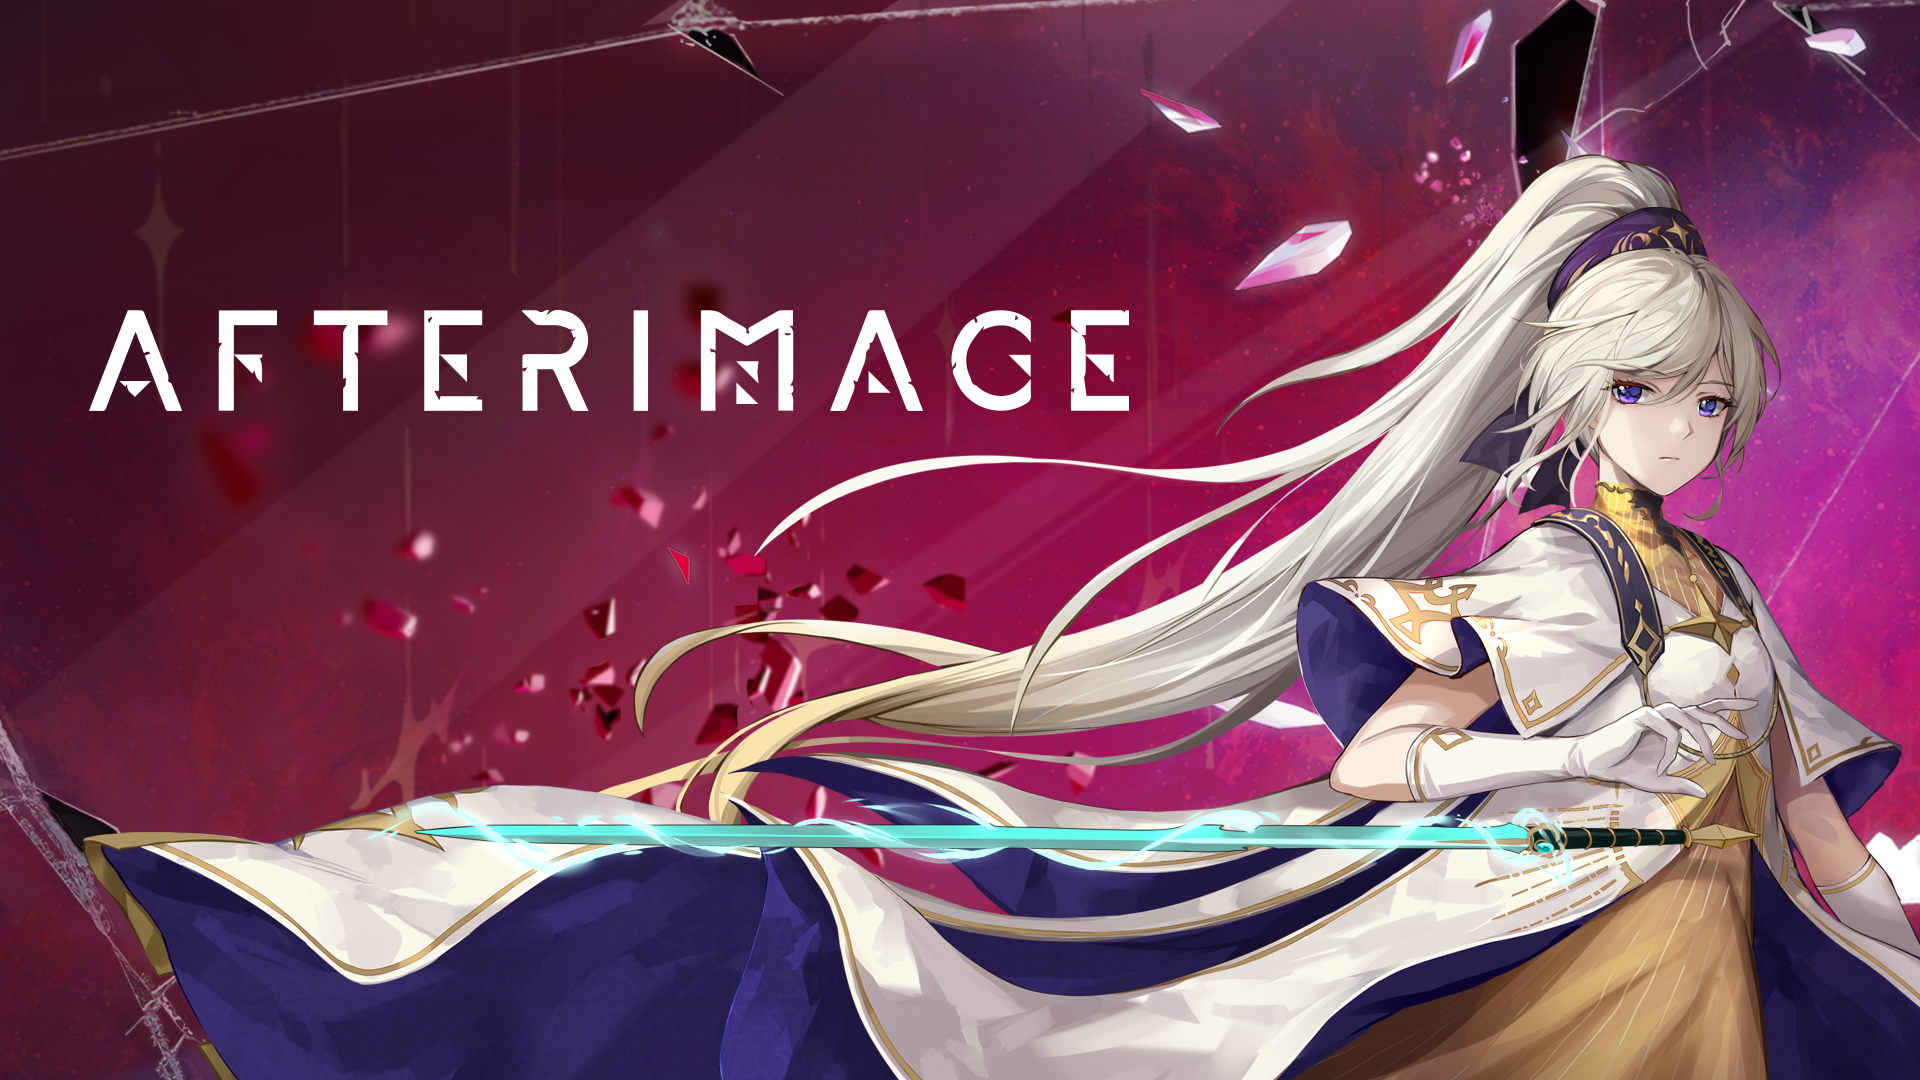 Afterimage, lo splendido titolo d'azione e avventura, è ora disponibile